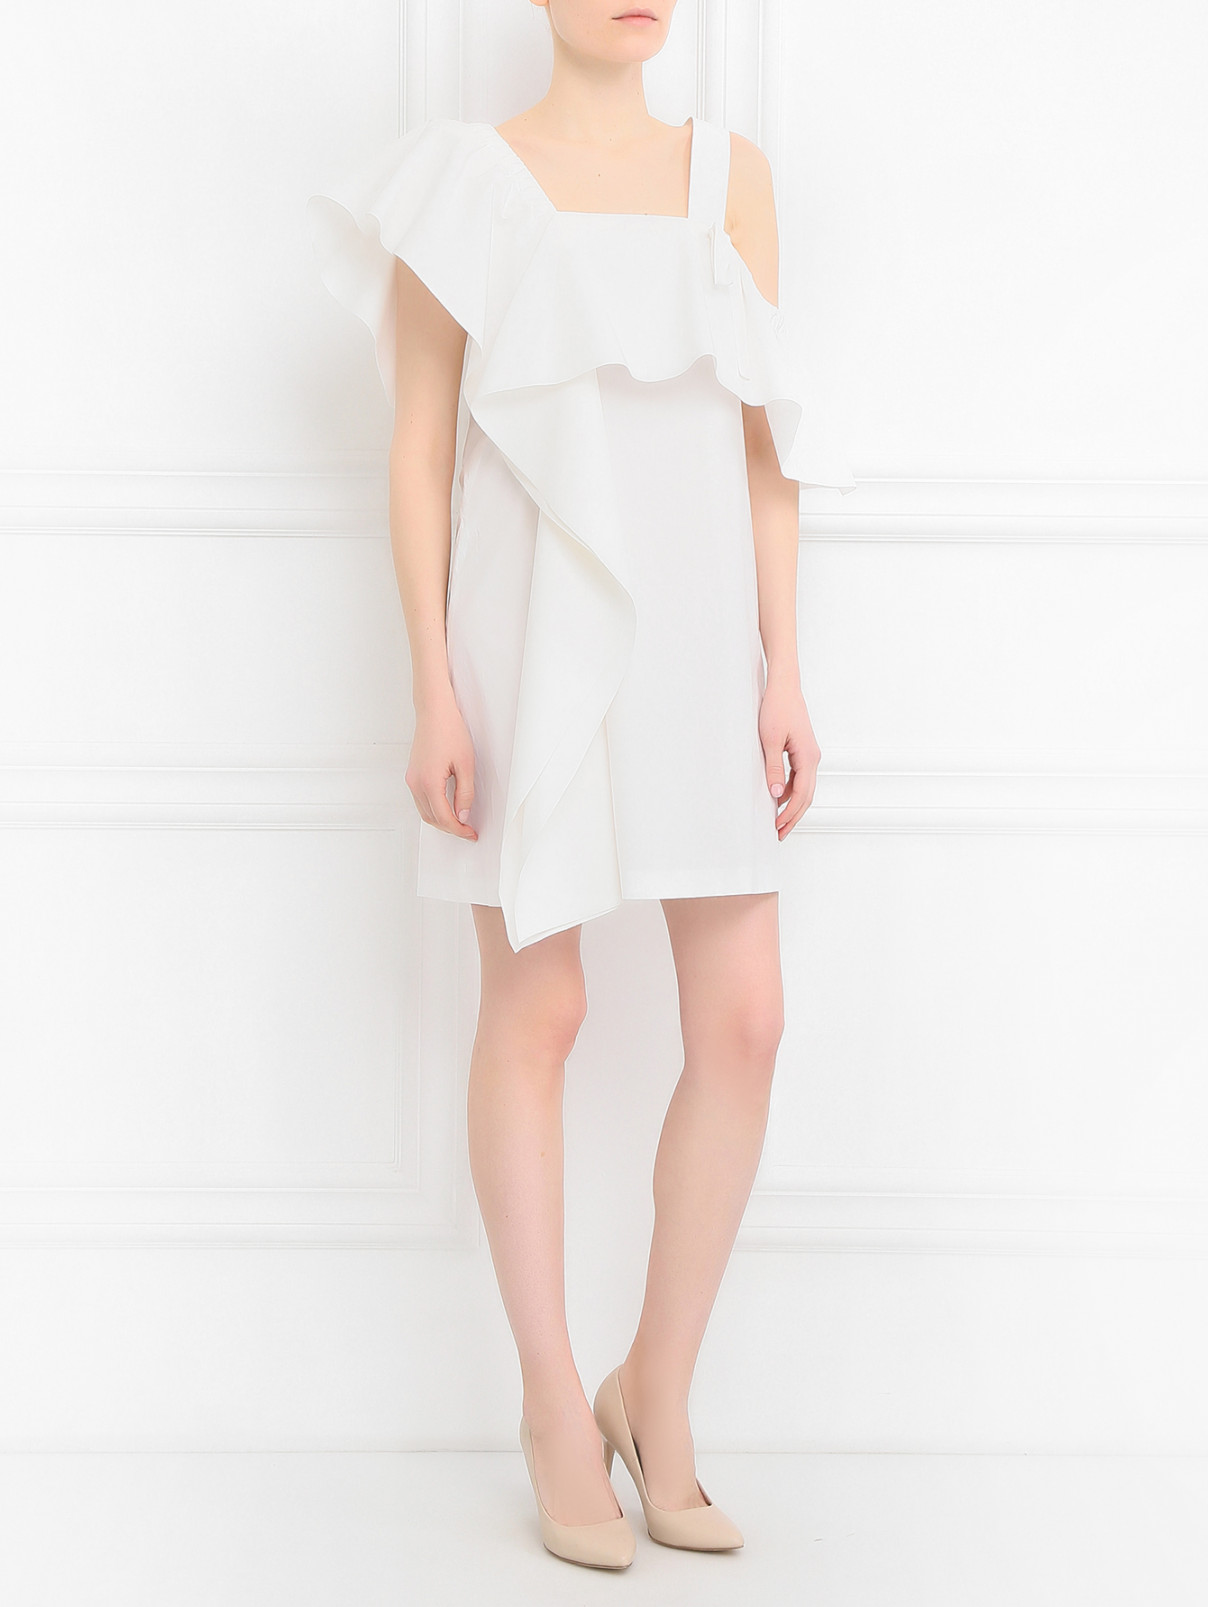 Платье-мини из хлопка с воланами Dorothee Schumacher  –  Модель Общий вид  – Цвет:  Белый